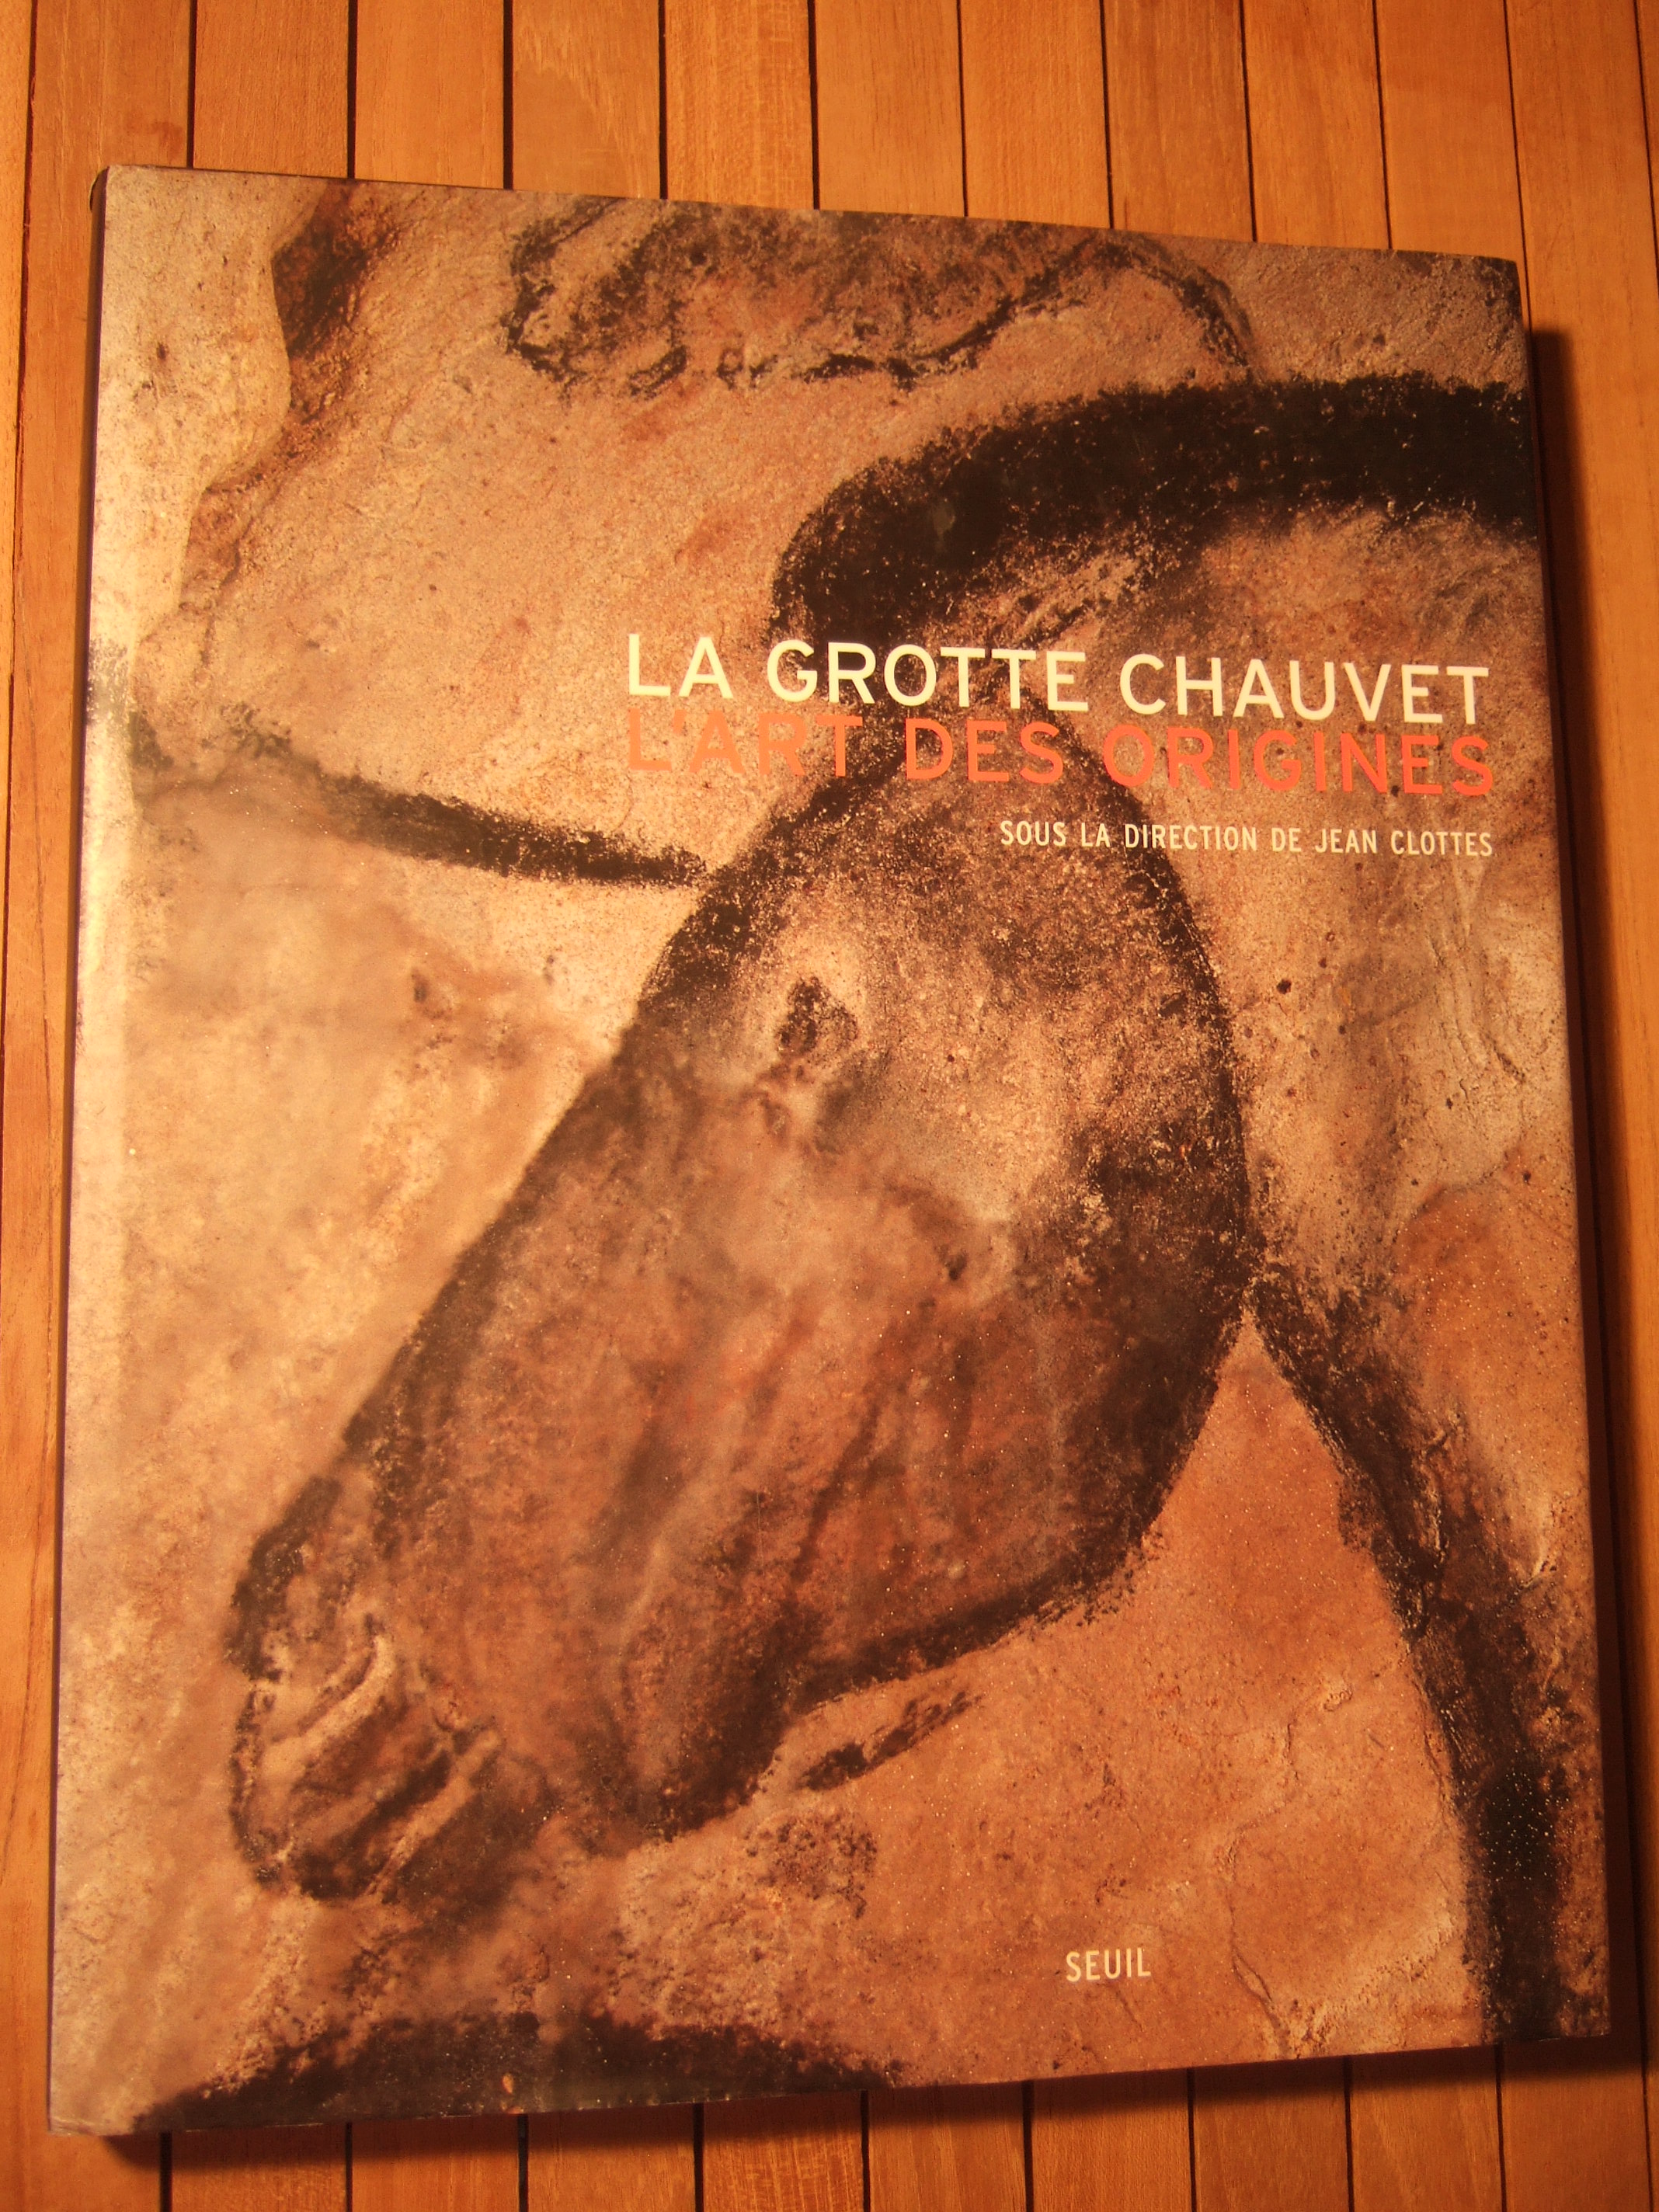 La Grotte Chauvet : L'art des origines. - COLLECTIF - Sous la direction de Jean CLOTTES